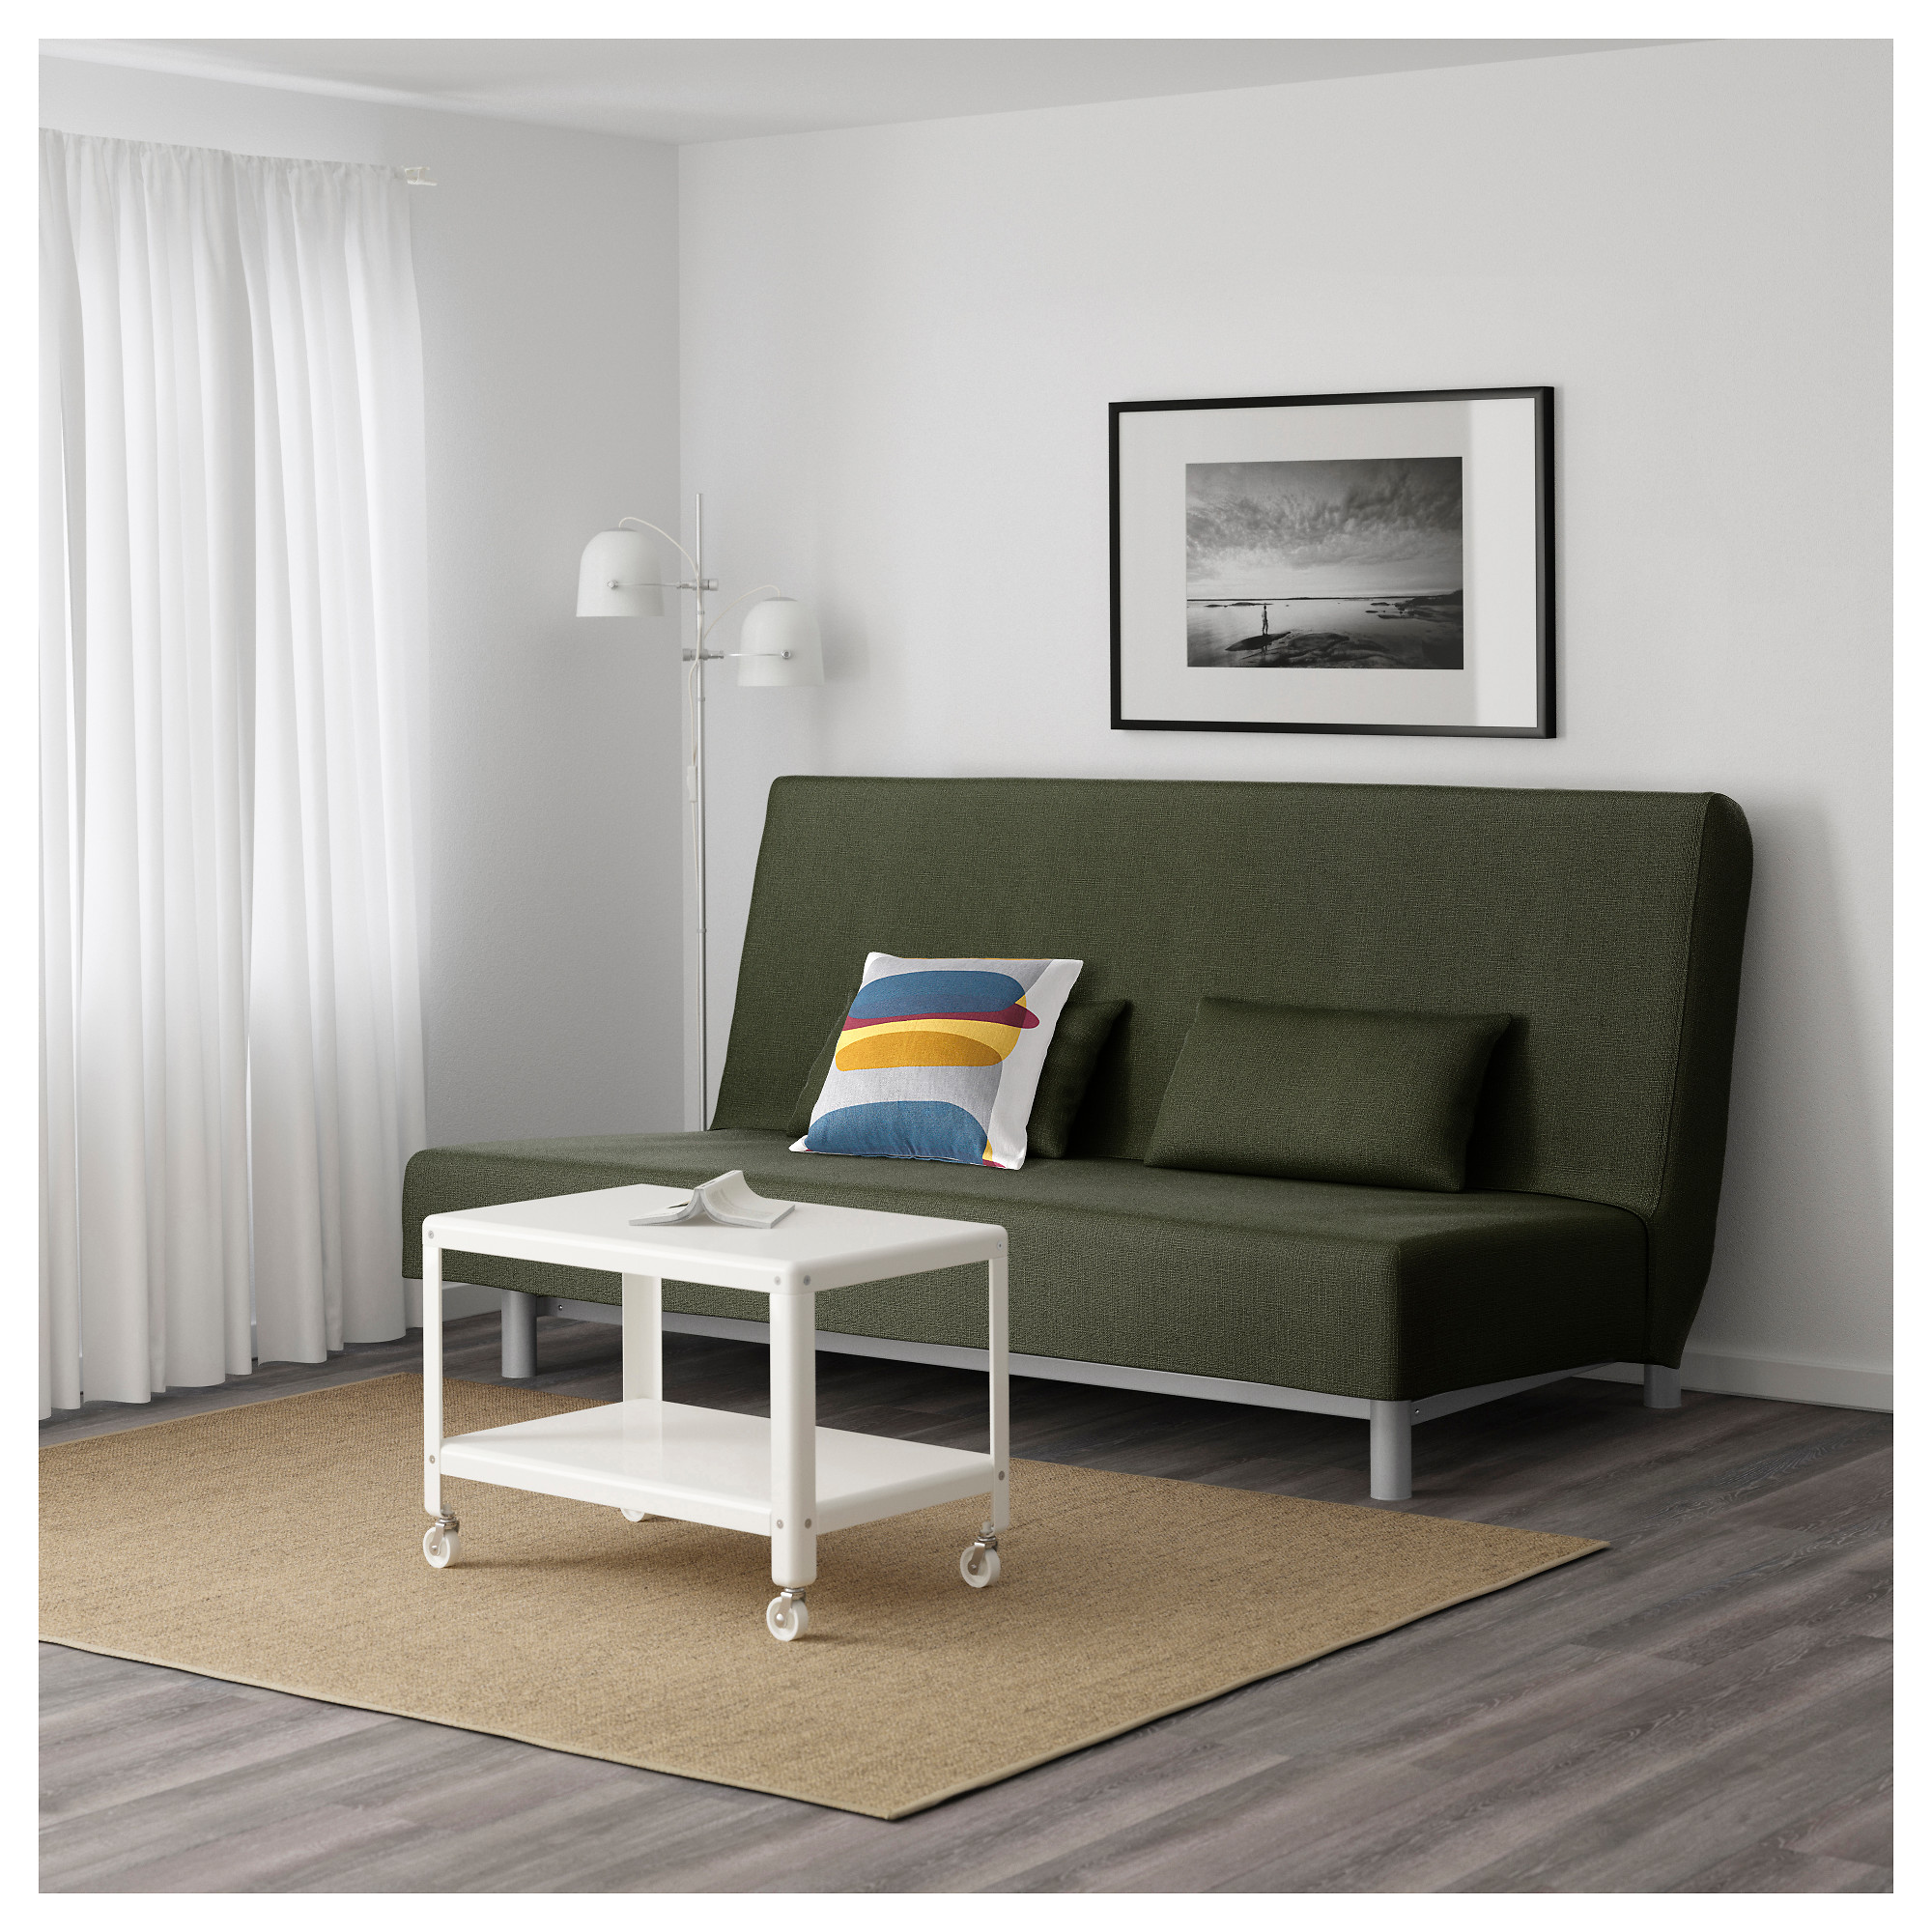 Купить диван-кровать 3-местный бединге мурбо, эдшен зеленый в икеа.